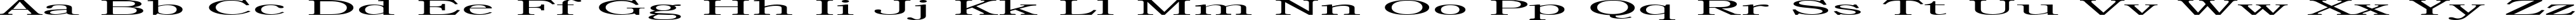 Пример написания английского алфавита шрифтом Steamroller